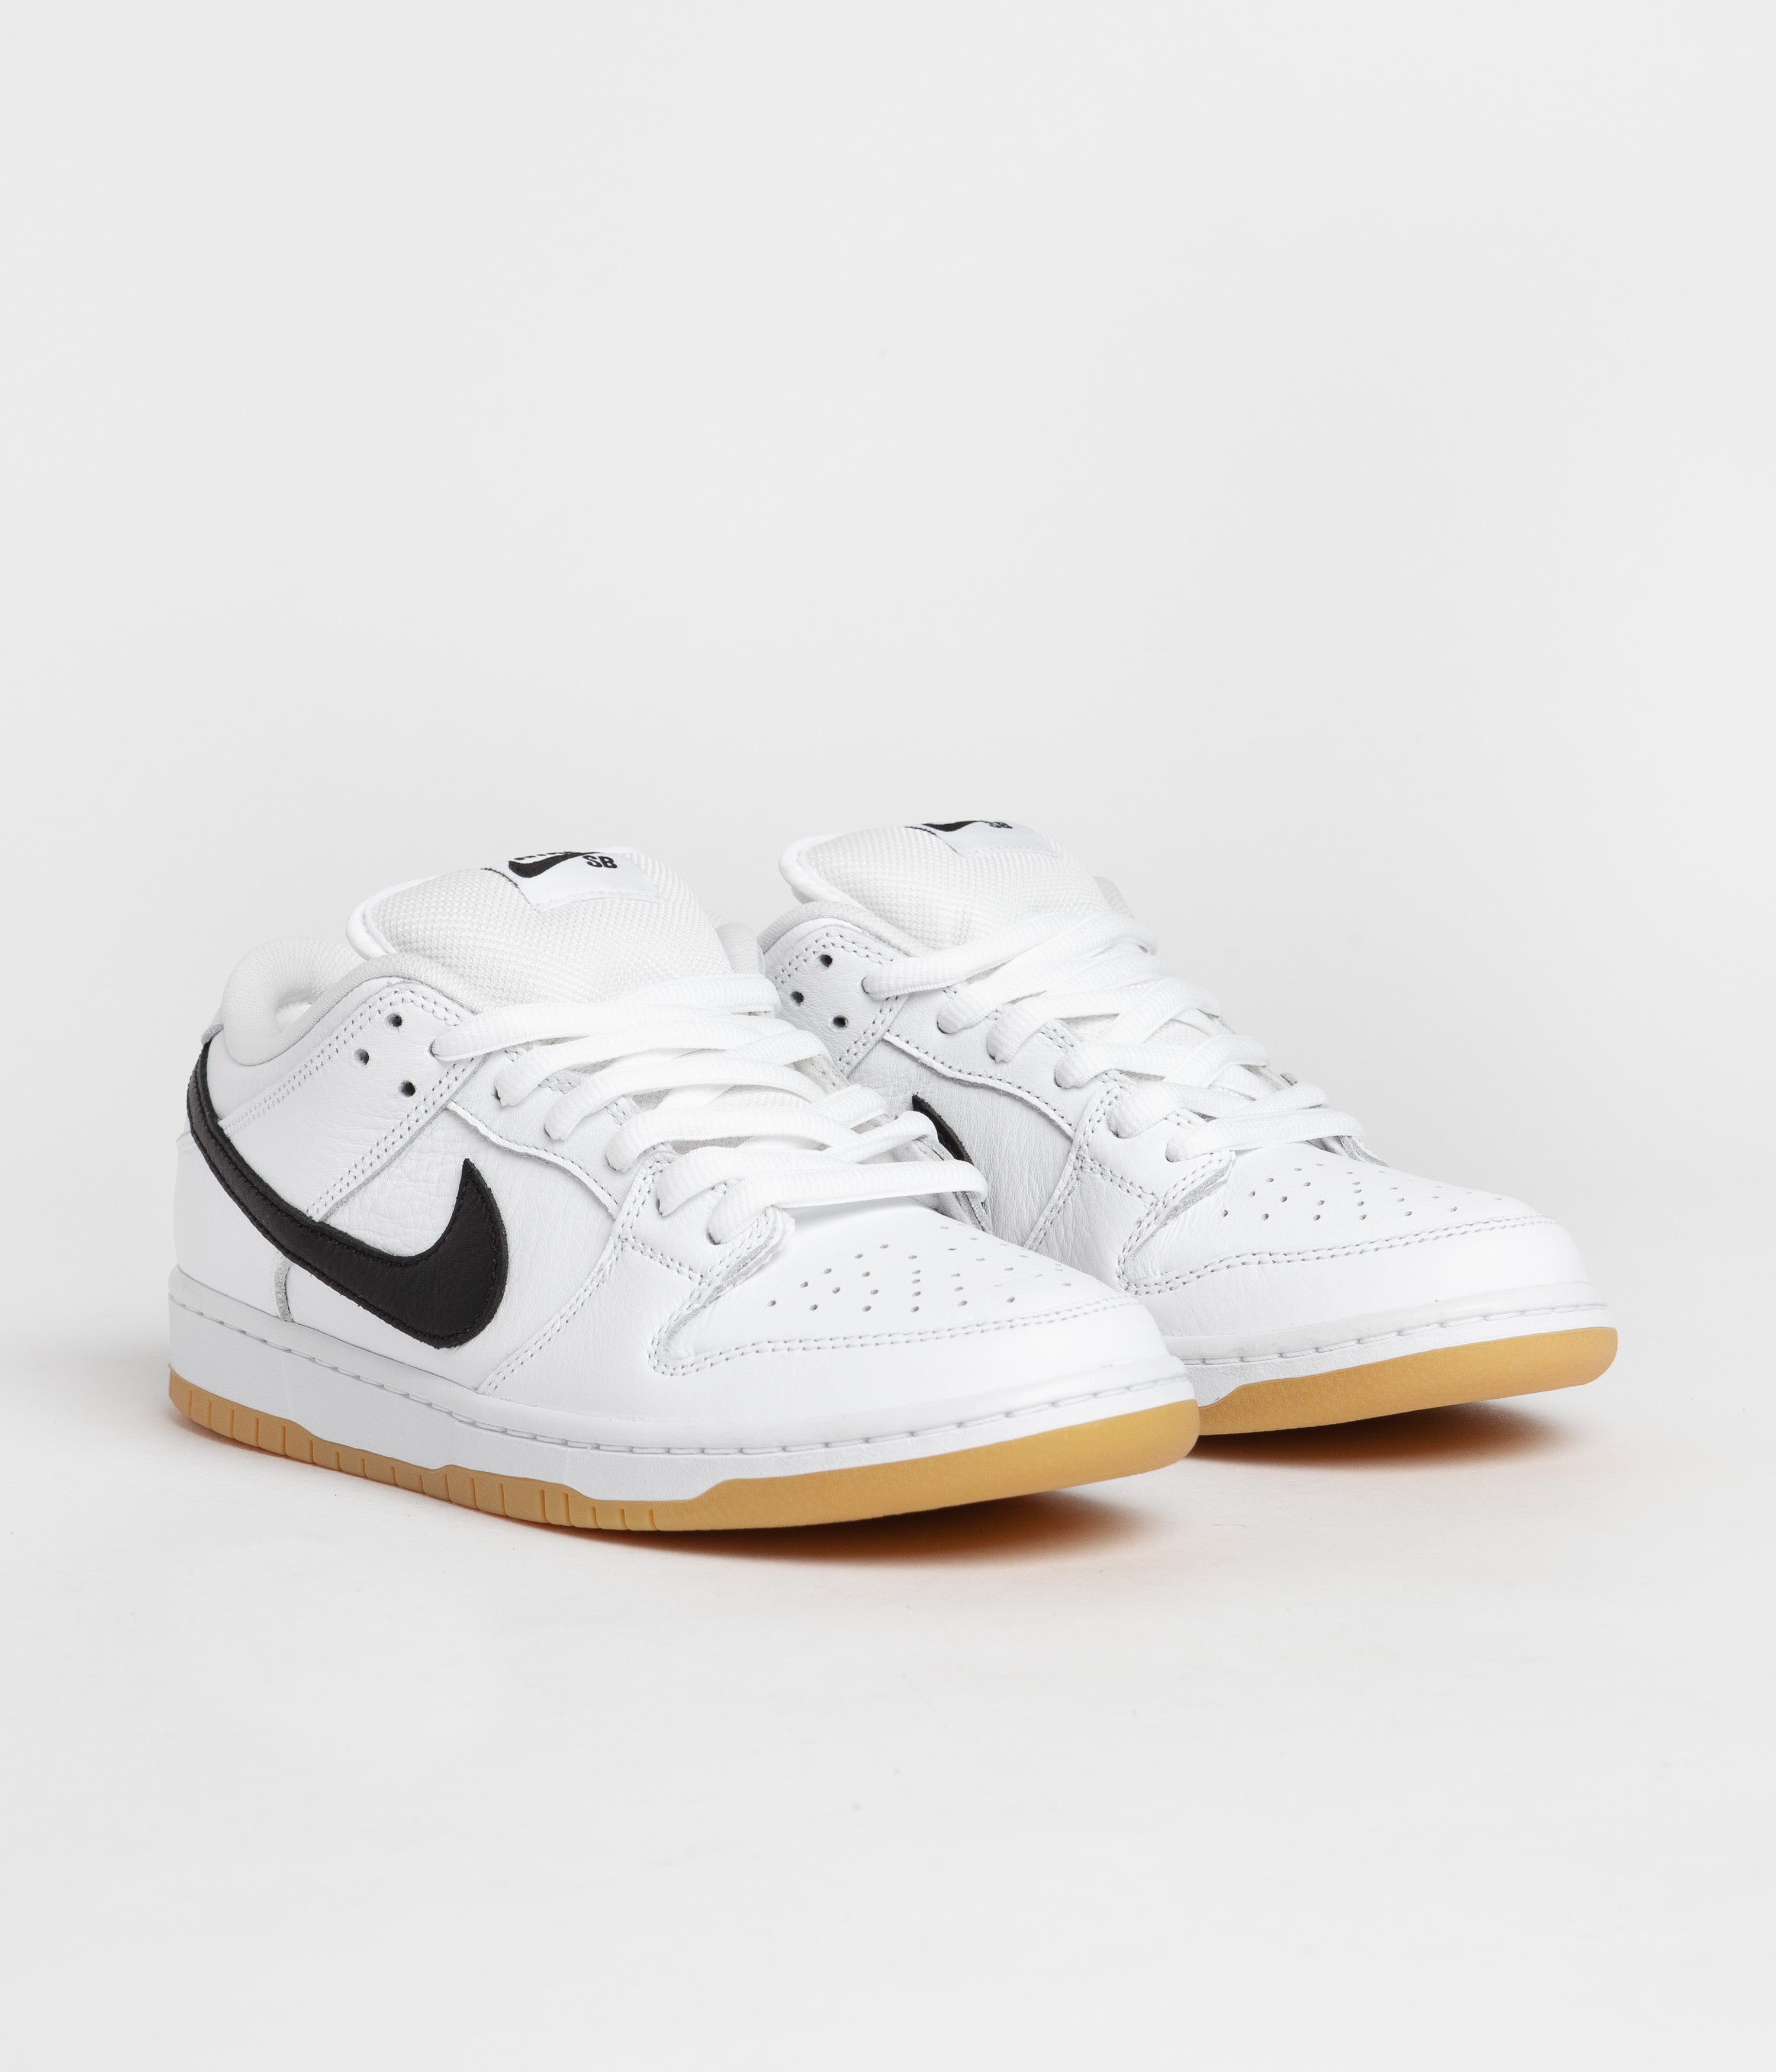 Nike SB Dunk Low Pro Shoes - White / Black - White - Gum Light